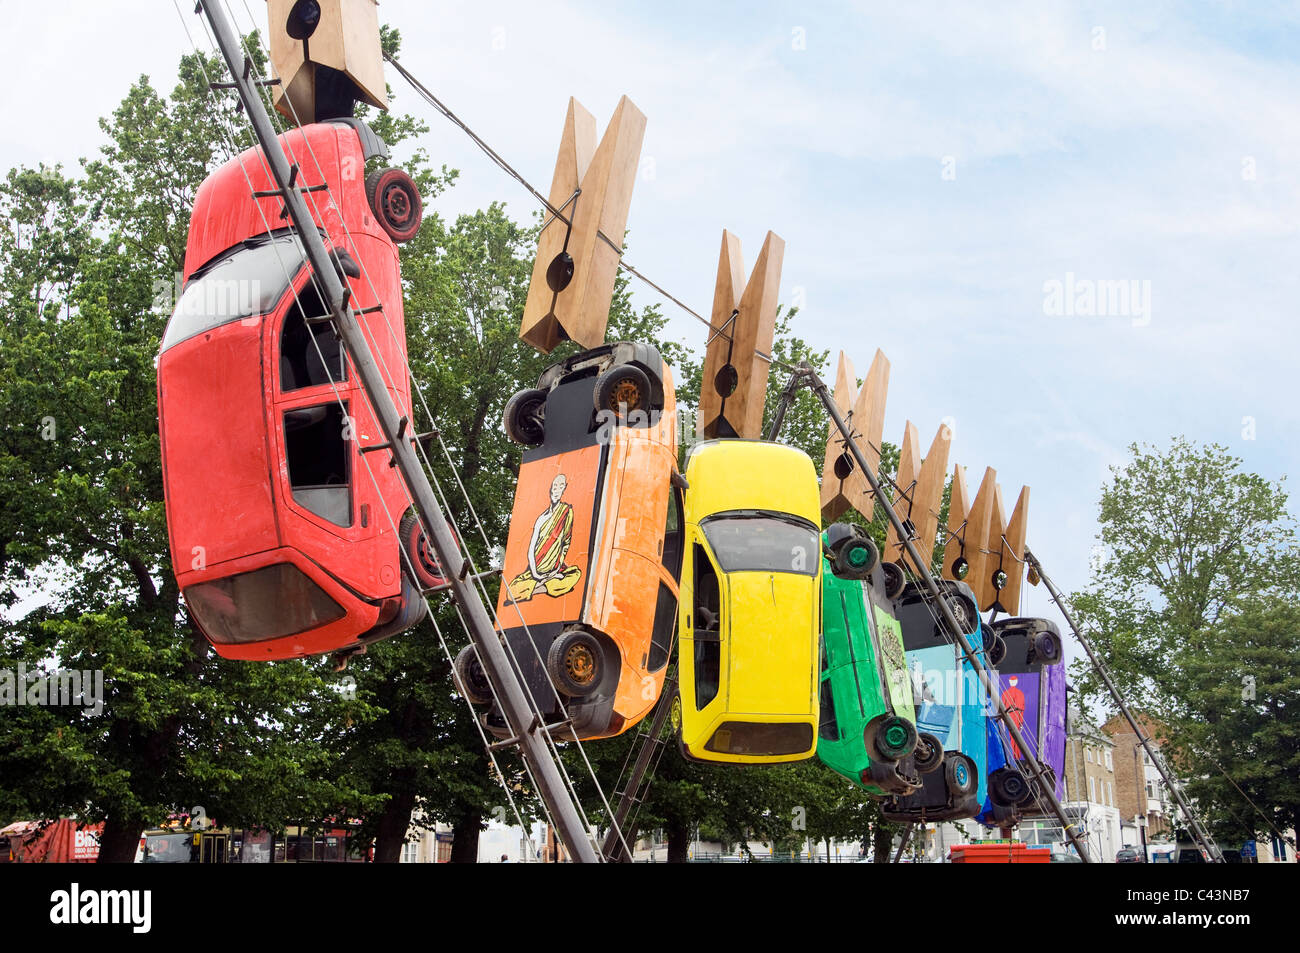 Sept voitures se suspendre à des pinces à linge géantes sur un fil à Brighton dans le cadre du Fringe Festival annuel d'art du théâtre de rue. Banque D'Images